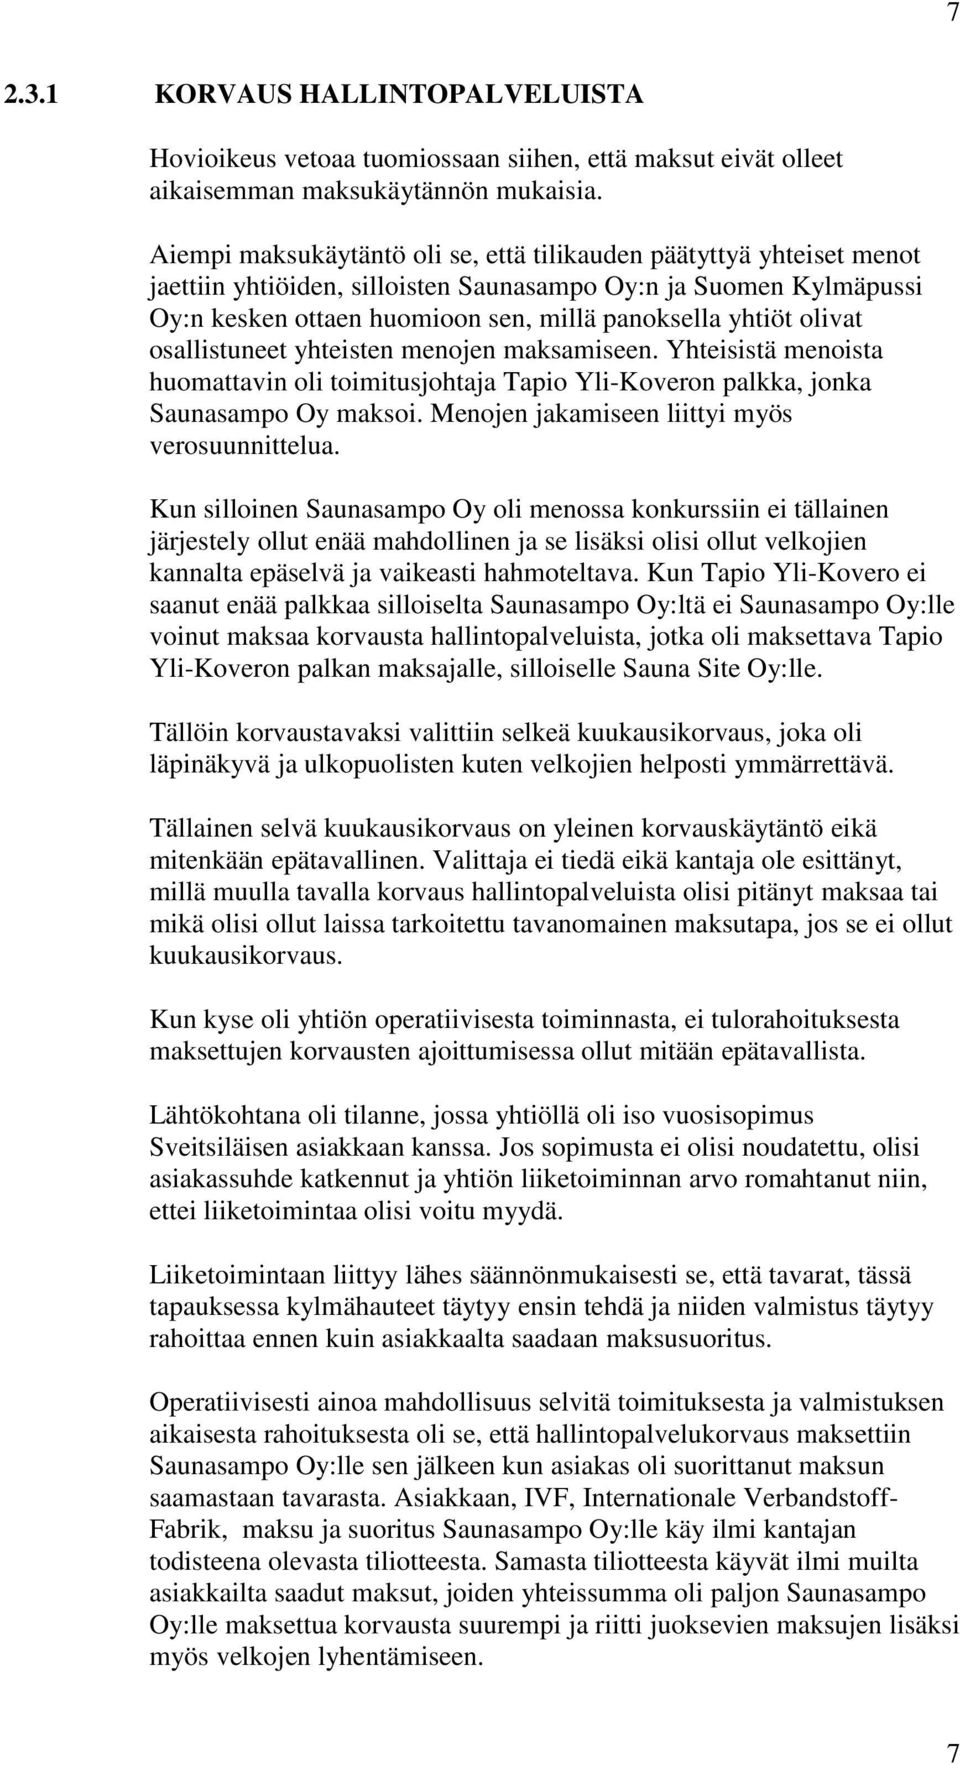 olivat osallistuneet yhteisten menojen maksamiseen. Yhteisistä menoista huomattavin oli toimitusjohtaja Tapio Yli-Koveron palkka, jonka Saunasampo Oy maksoi.